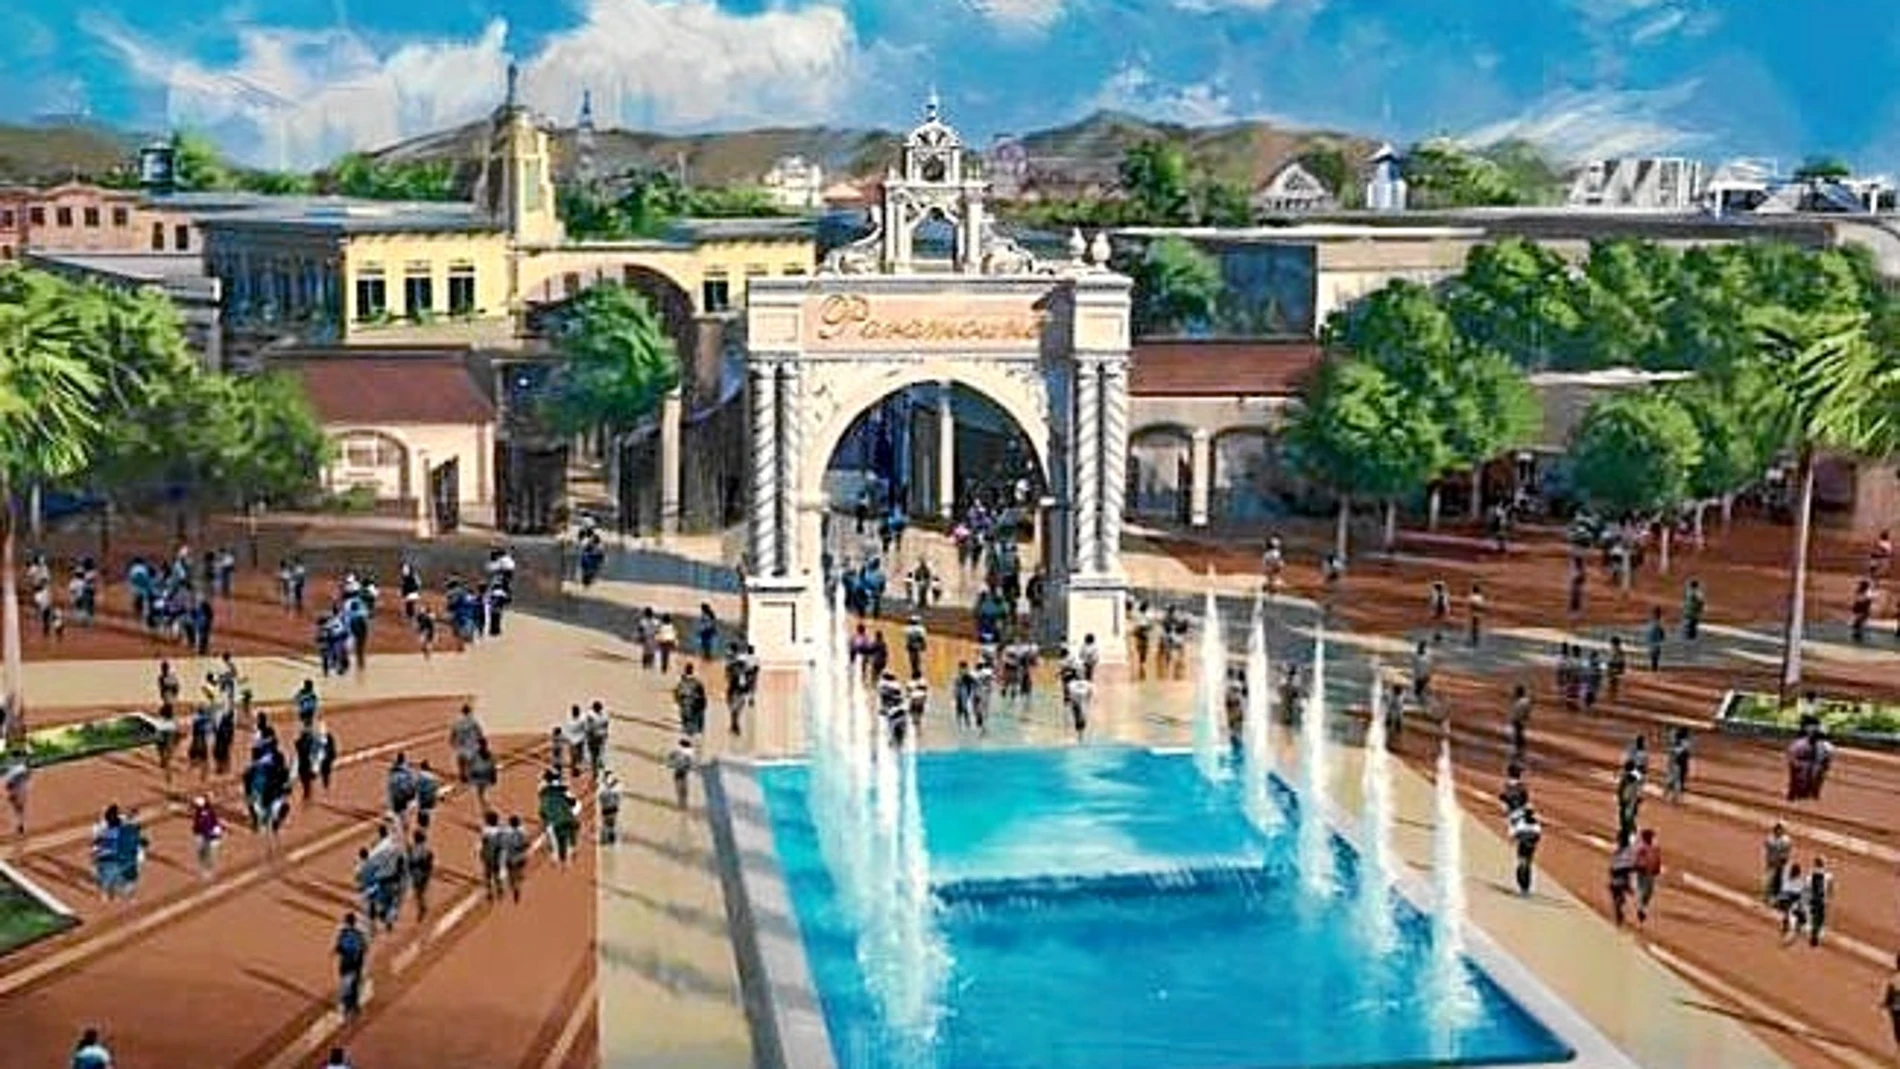 Imagen del futuro parque Paramount, ubicado en el municipio de Alhama de Murcia, y que contará con una superficie de 550.000 metros cuadrados